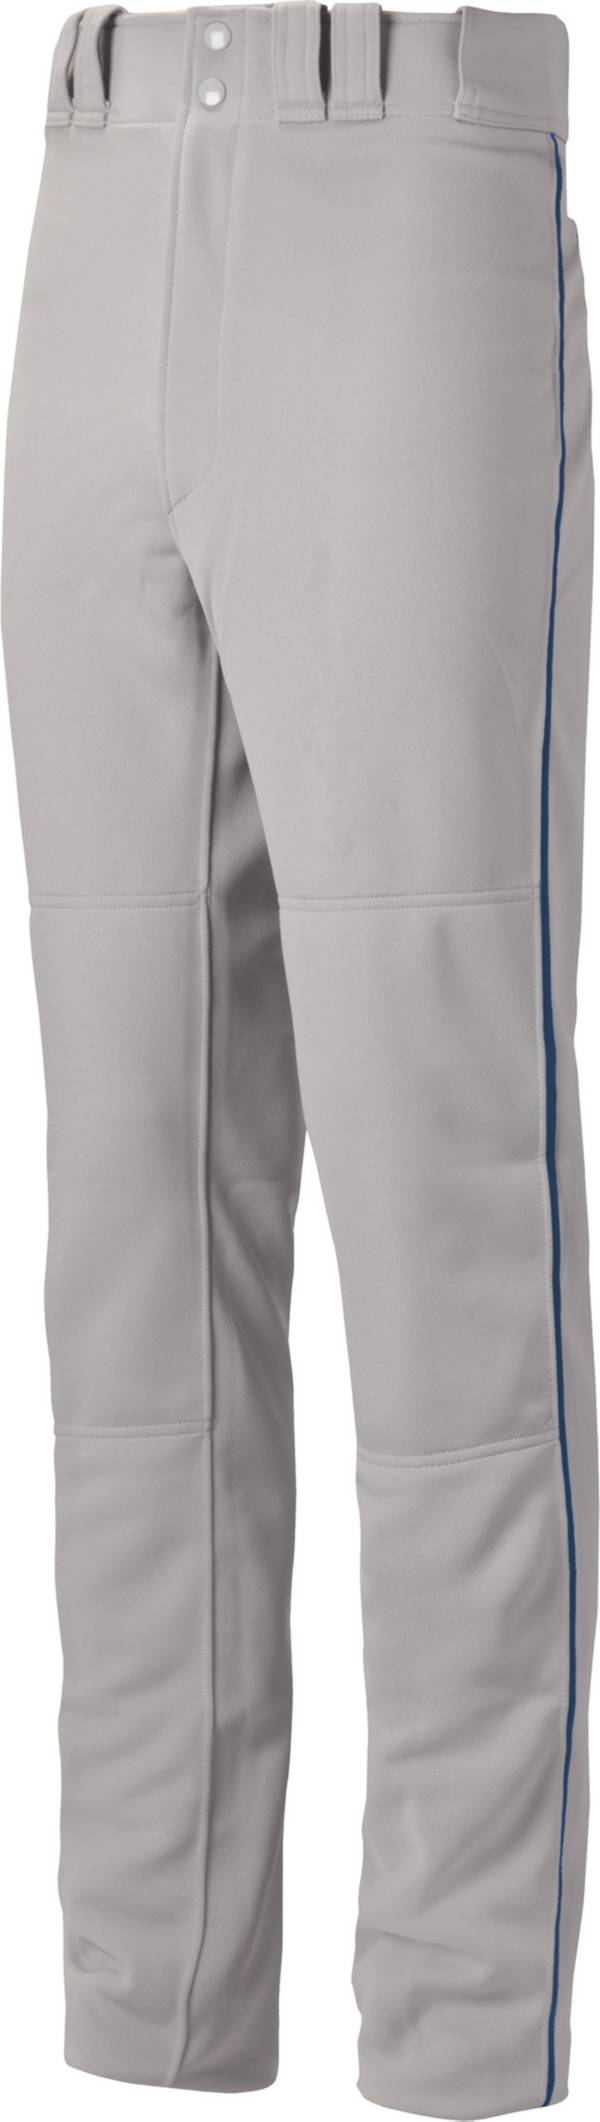 Mizuno Boys' Select Pro Baseball Pants